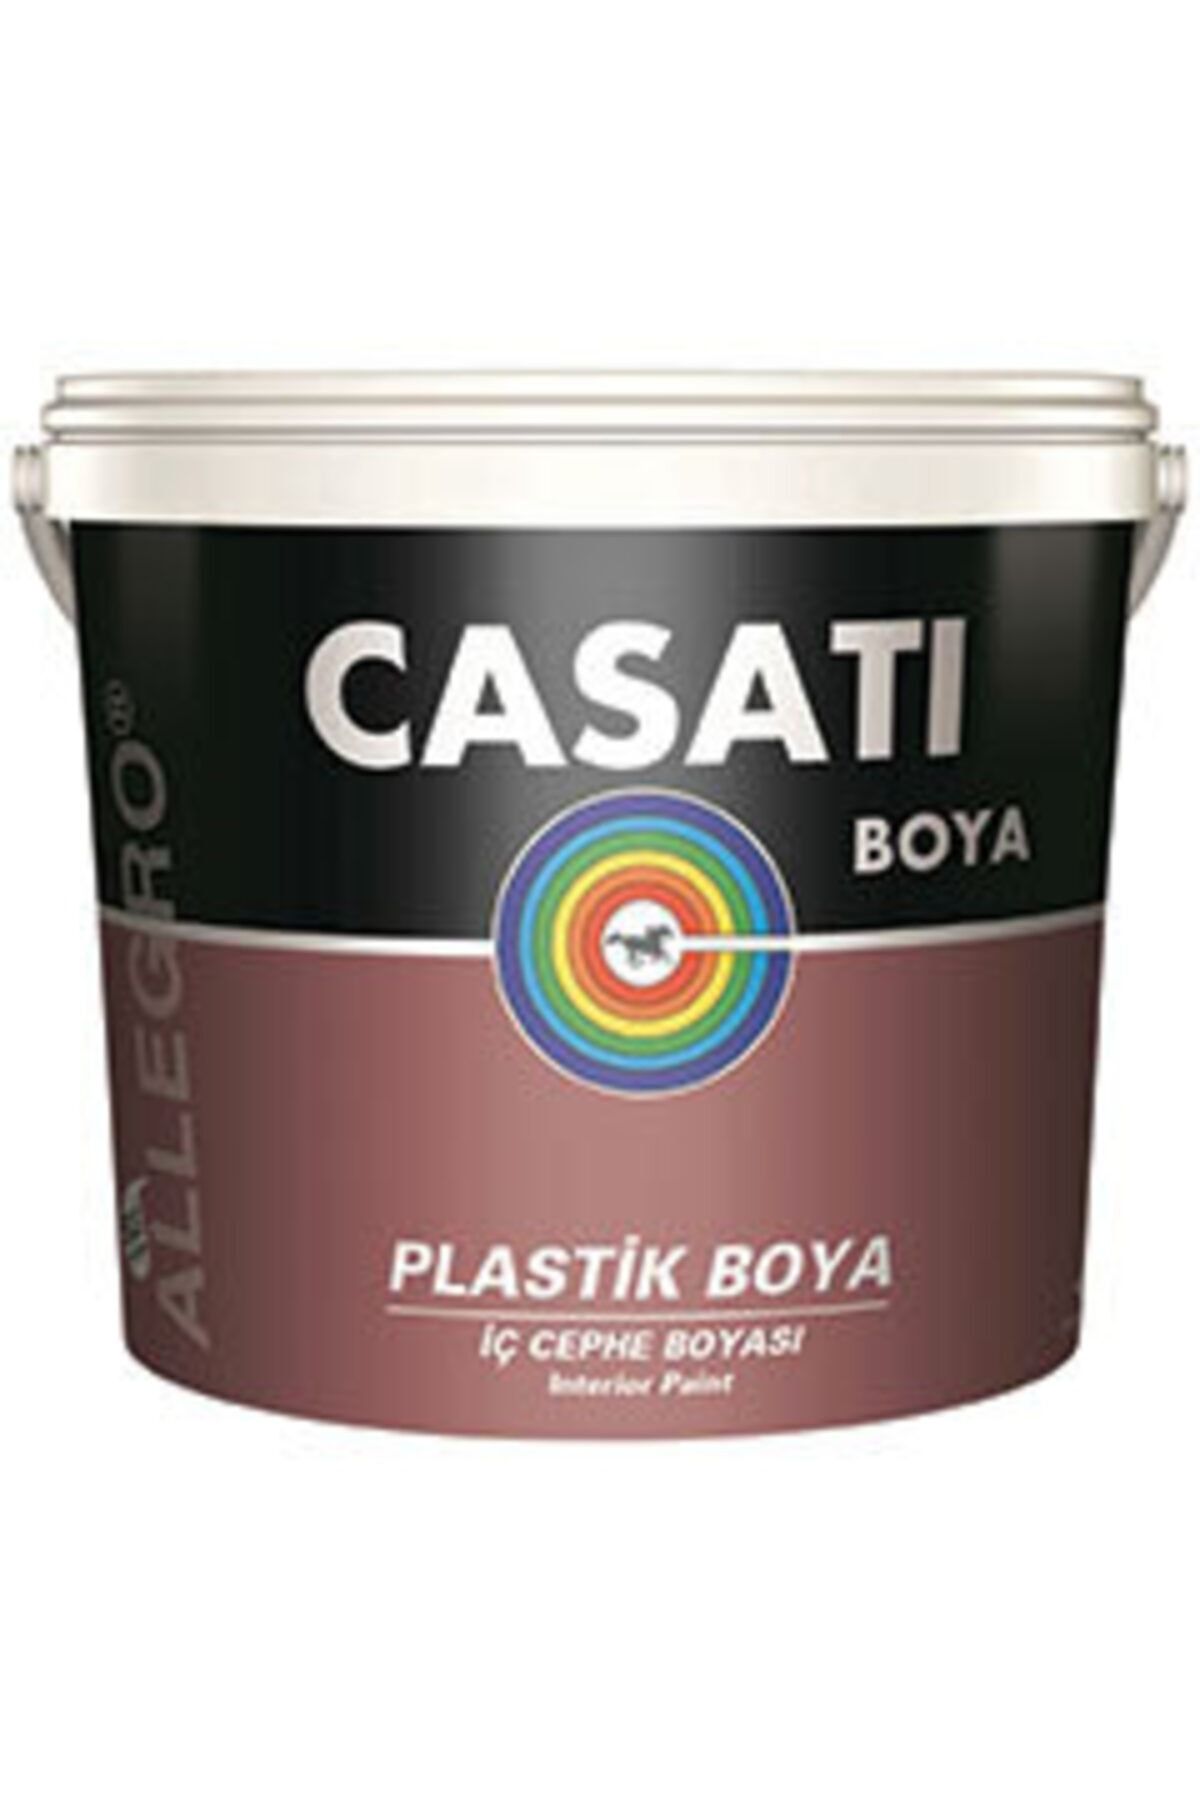 Casati Allegro Su Bazlı Iç Cephe Plastik Boya Dingin Beyaz Rengi 10 Kg